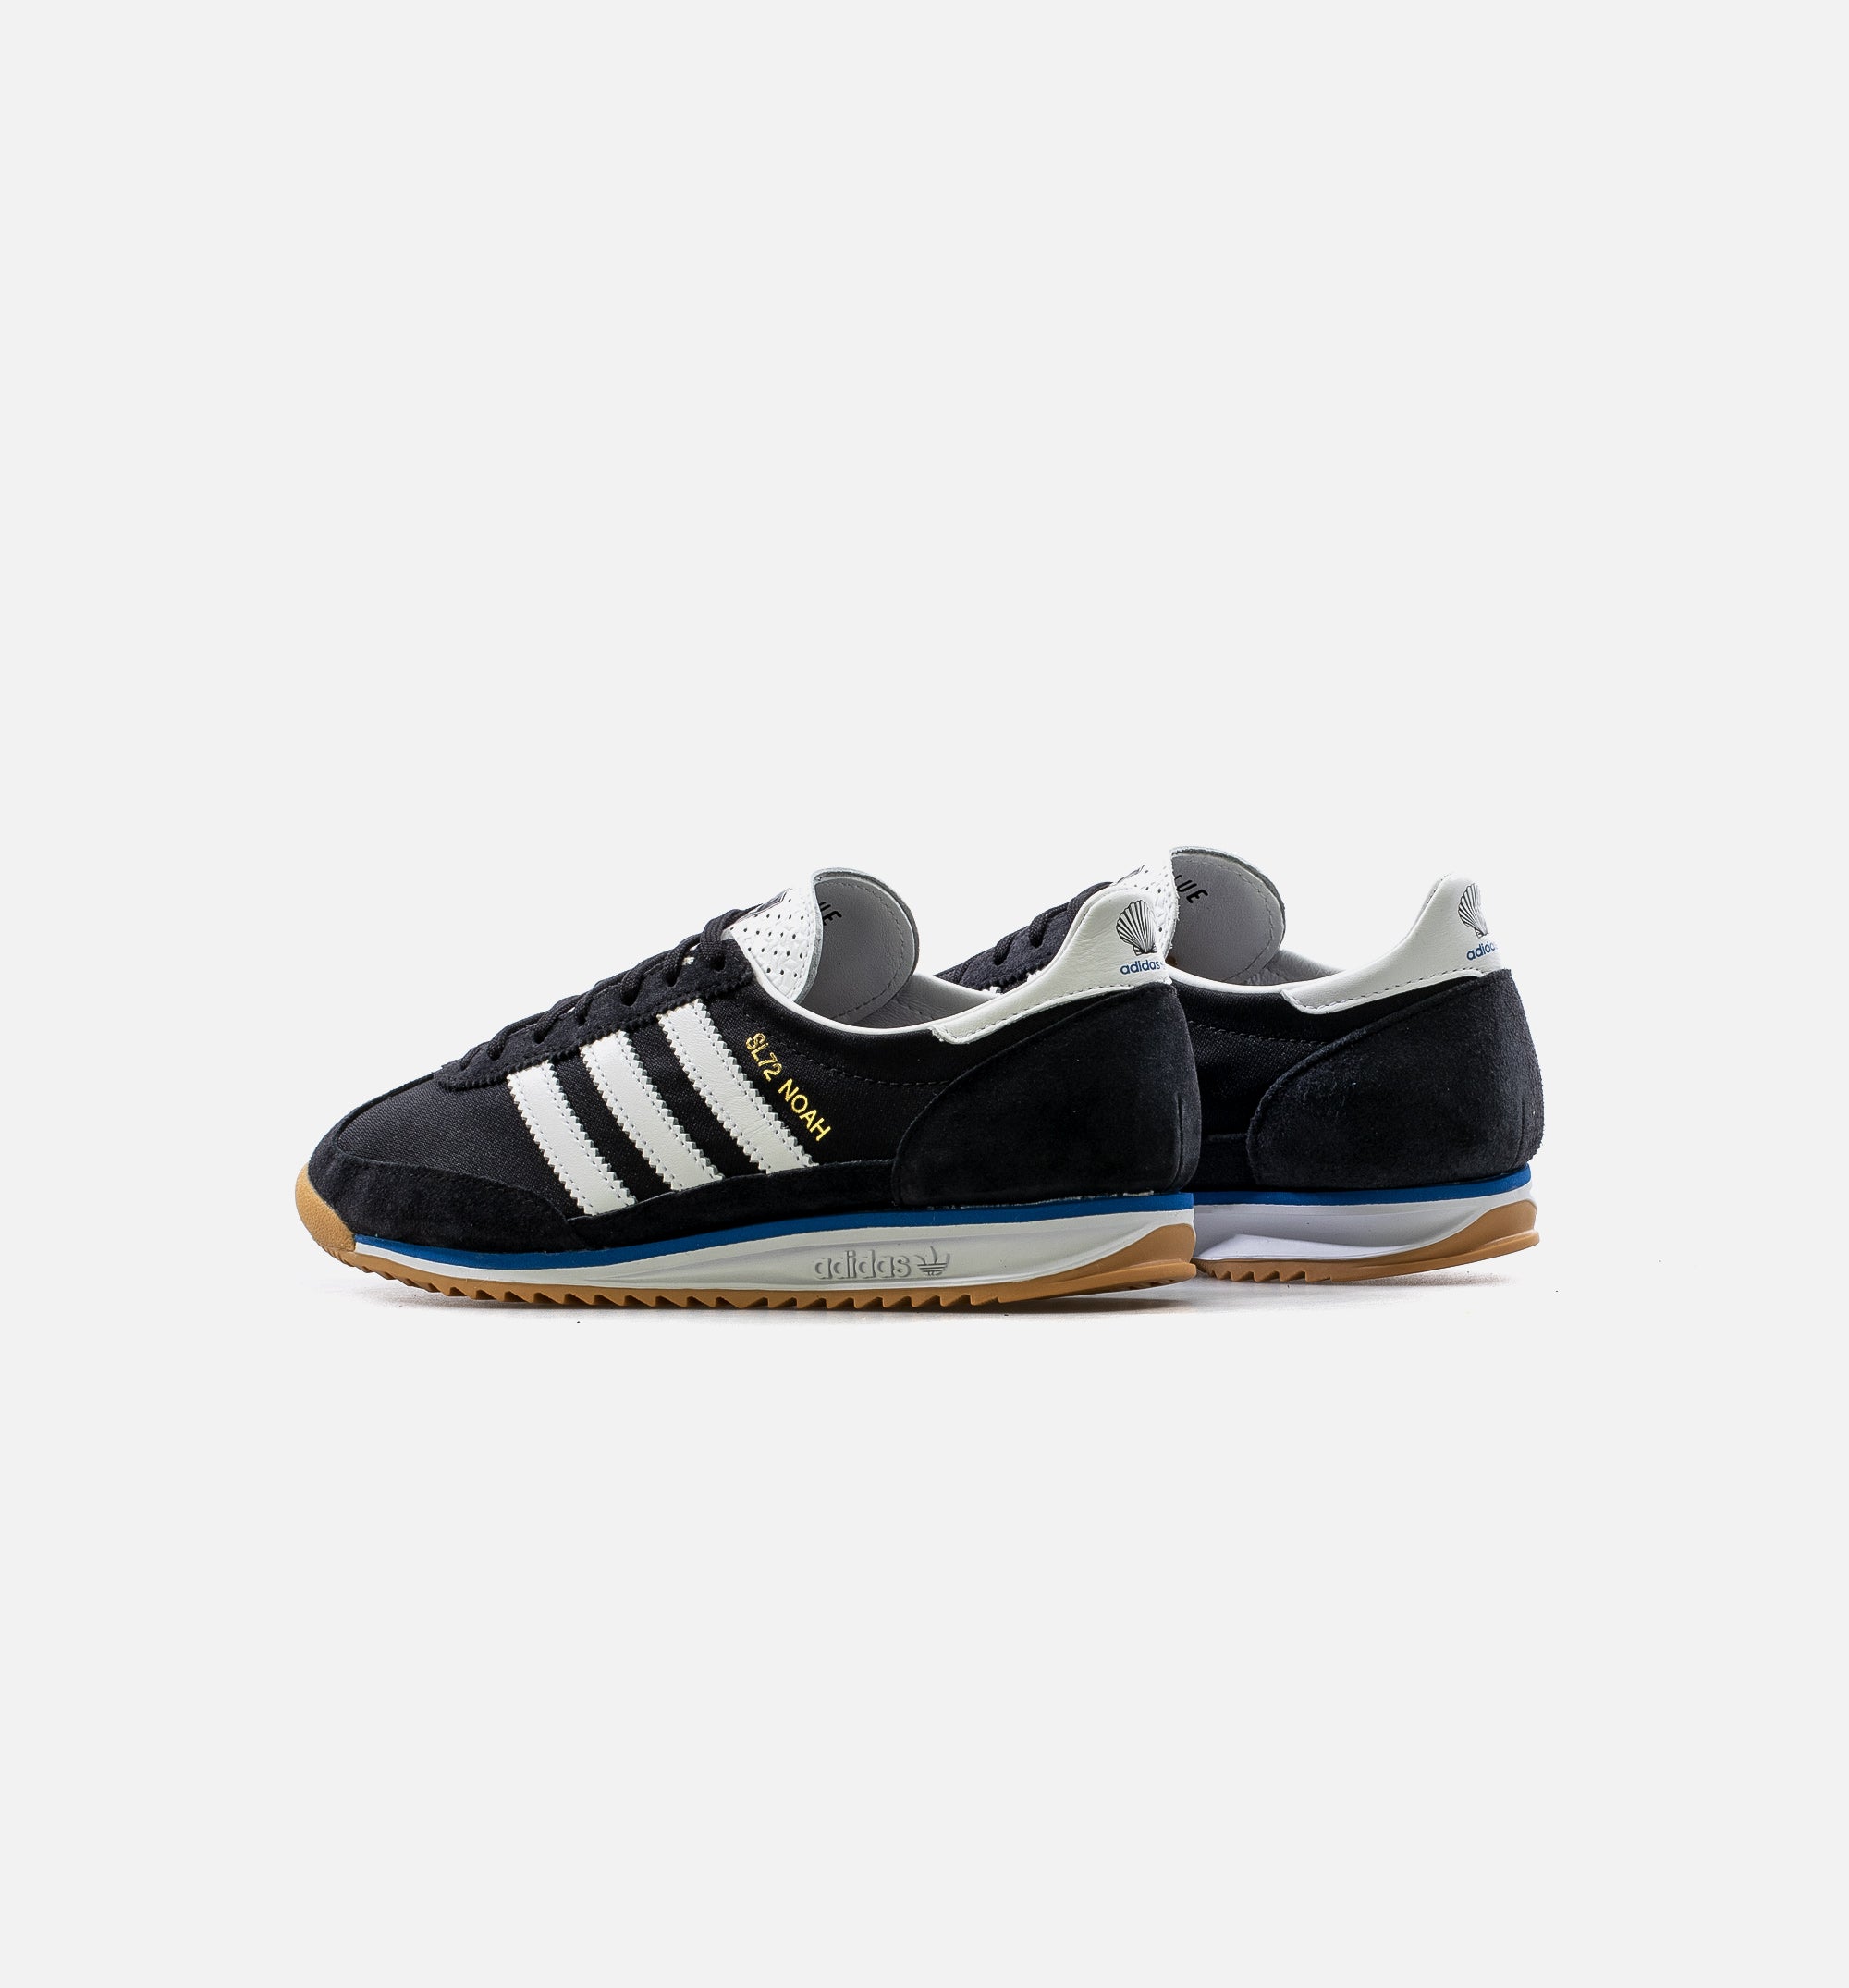 Adidas Consortium FW7857 SL 72 Noah Lifestyle Shoe - Black/White/Blue/Gum – ShopNiceKicks.com